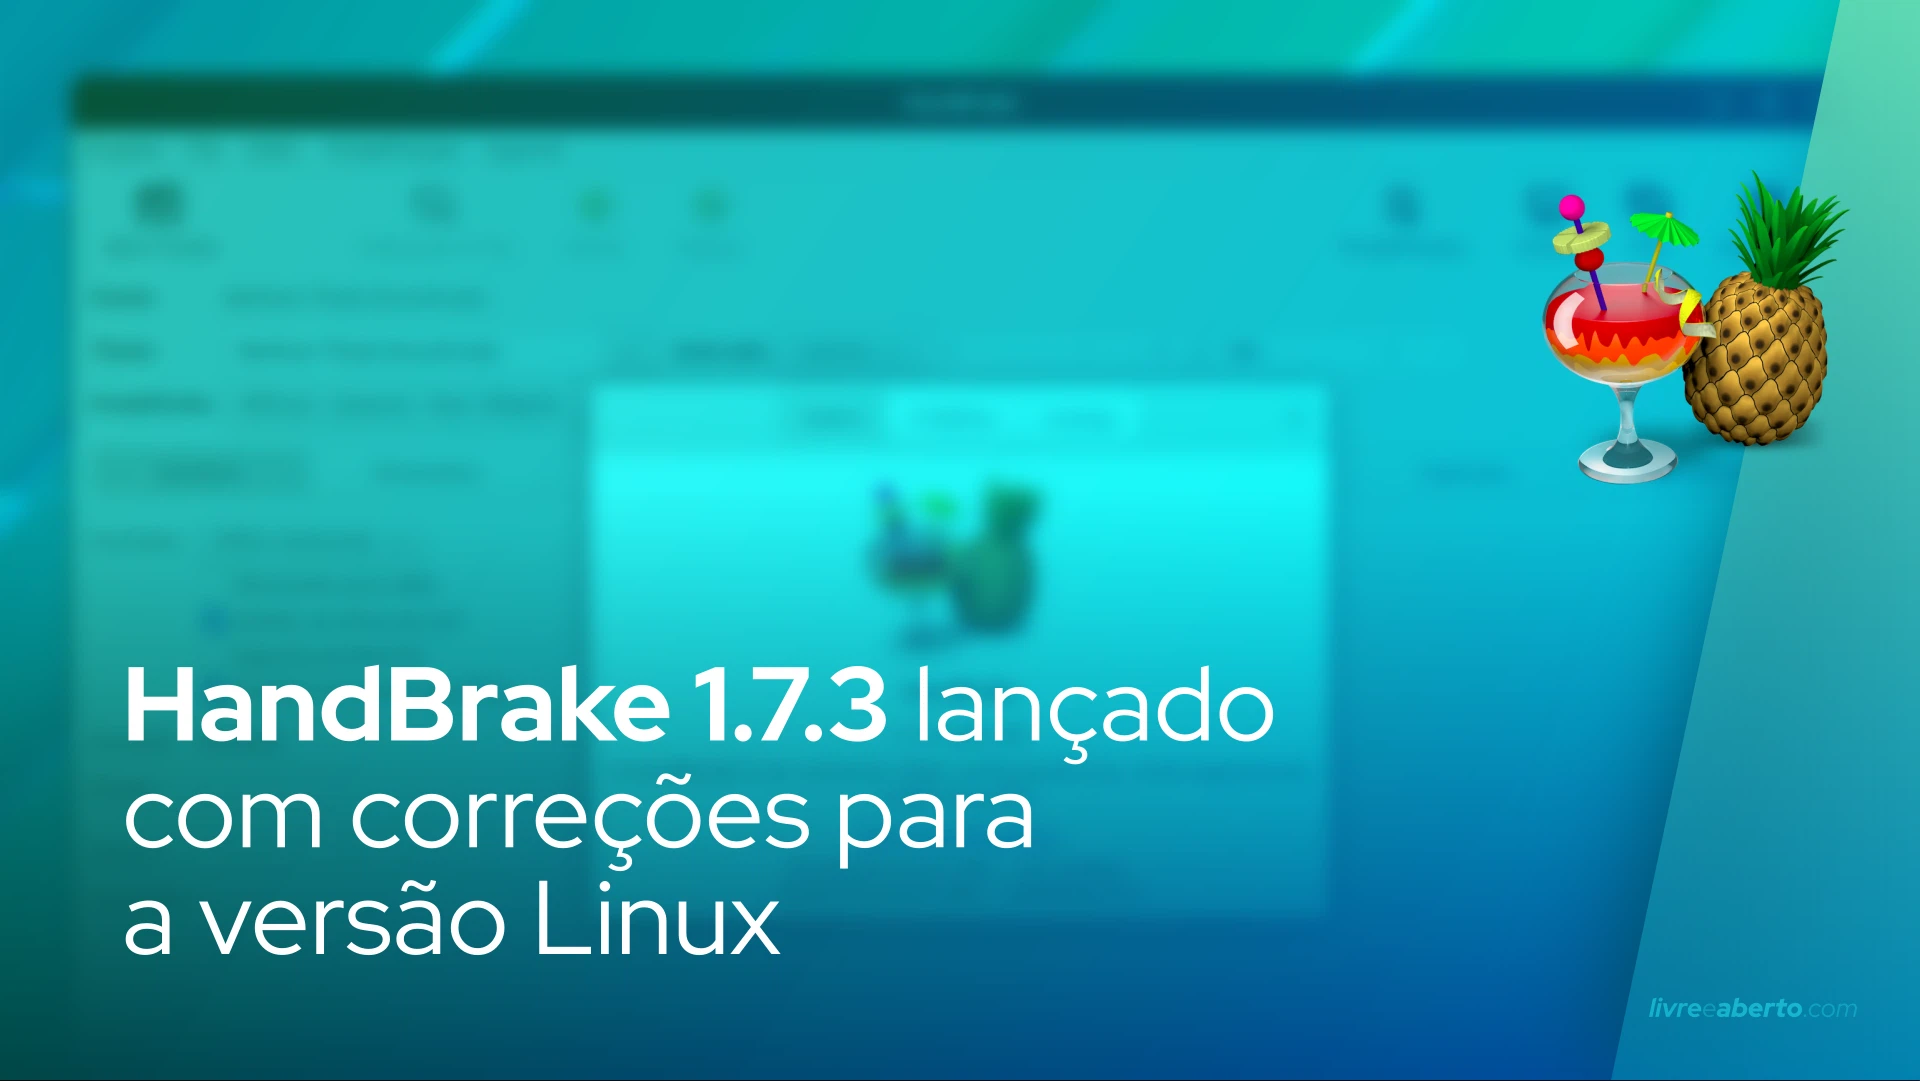 HandBrake 1.7.3 lançado com correções para a versão Linux